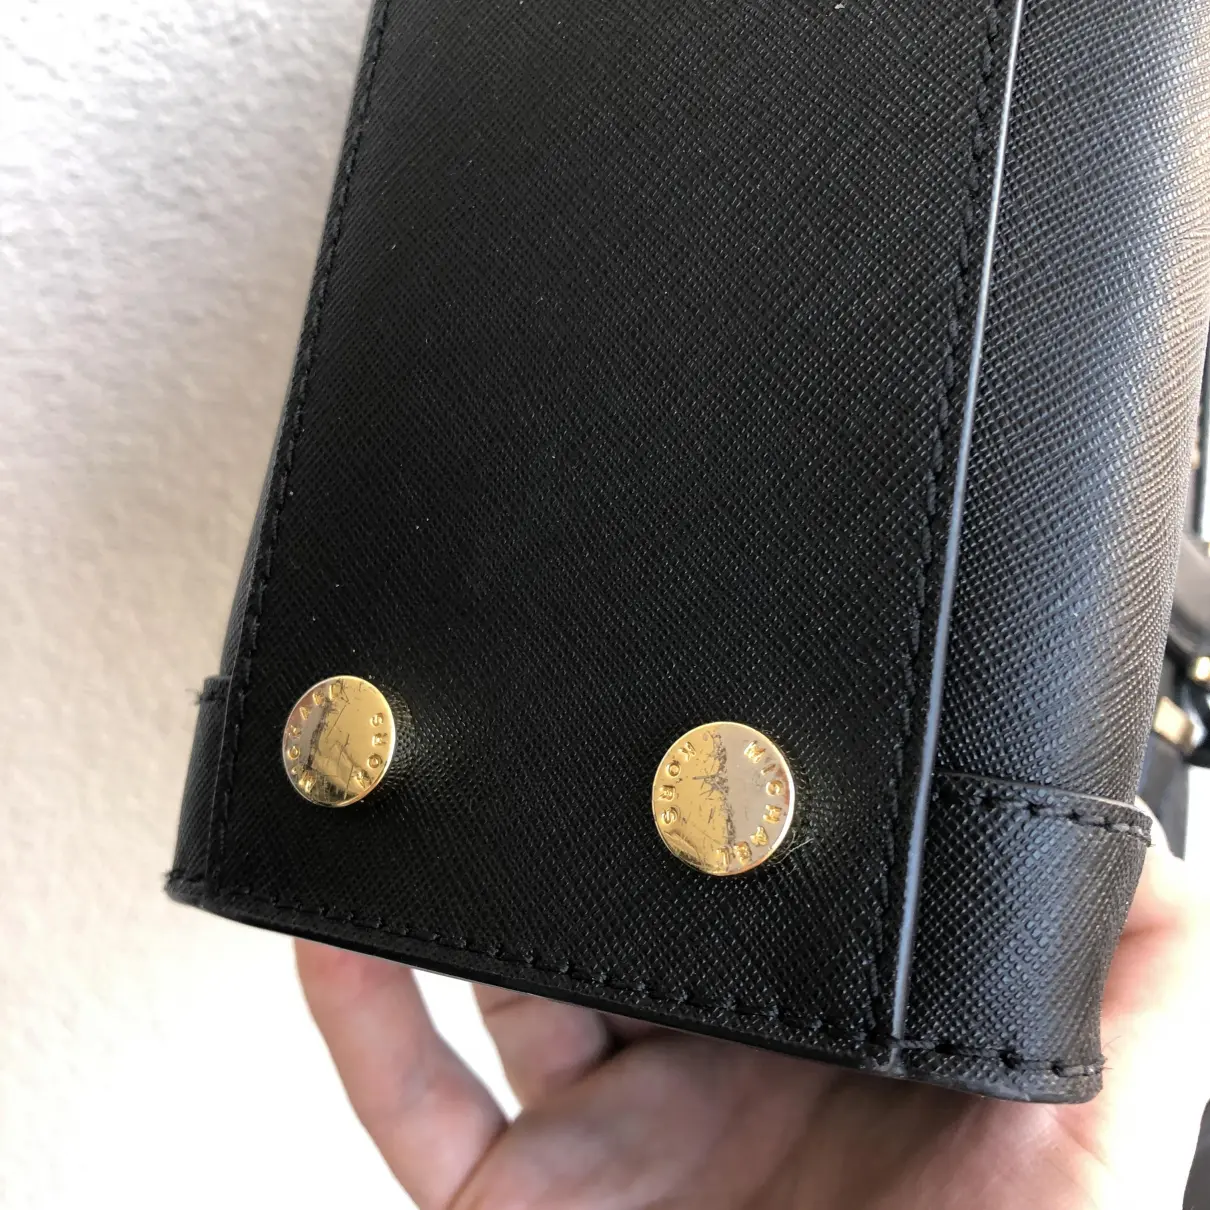 Dillon leather handbag Michael Kors